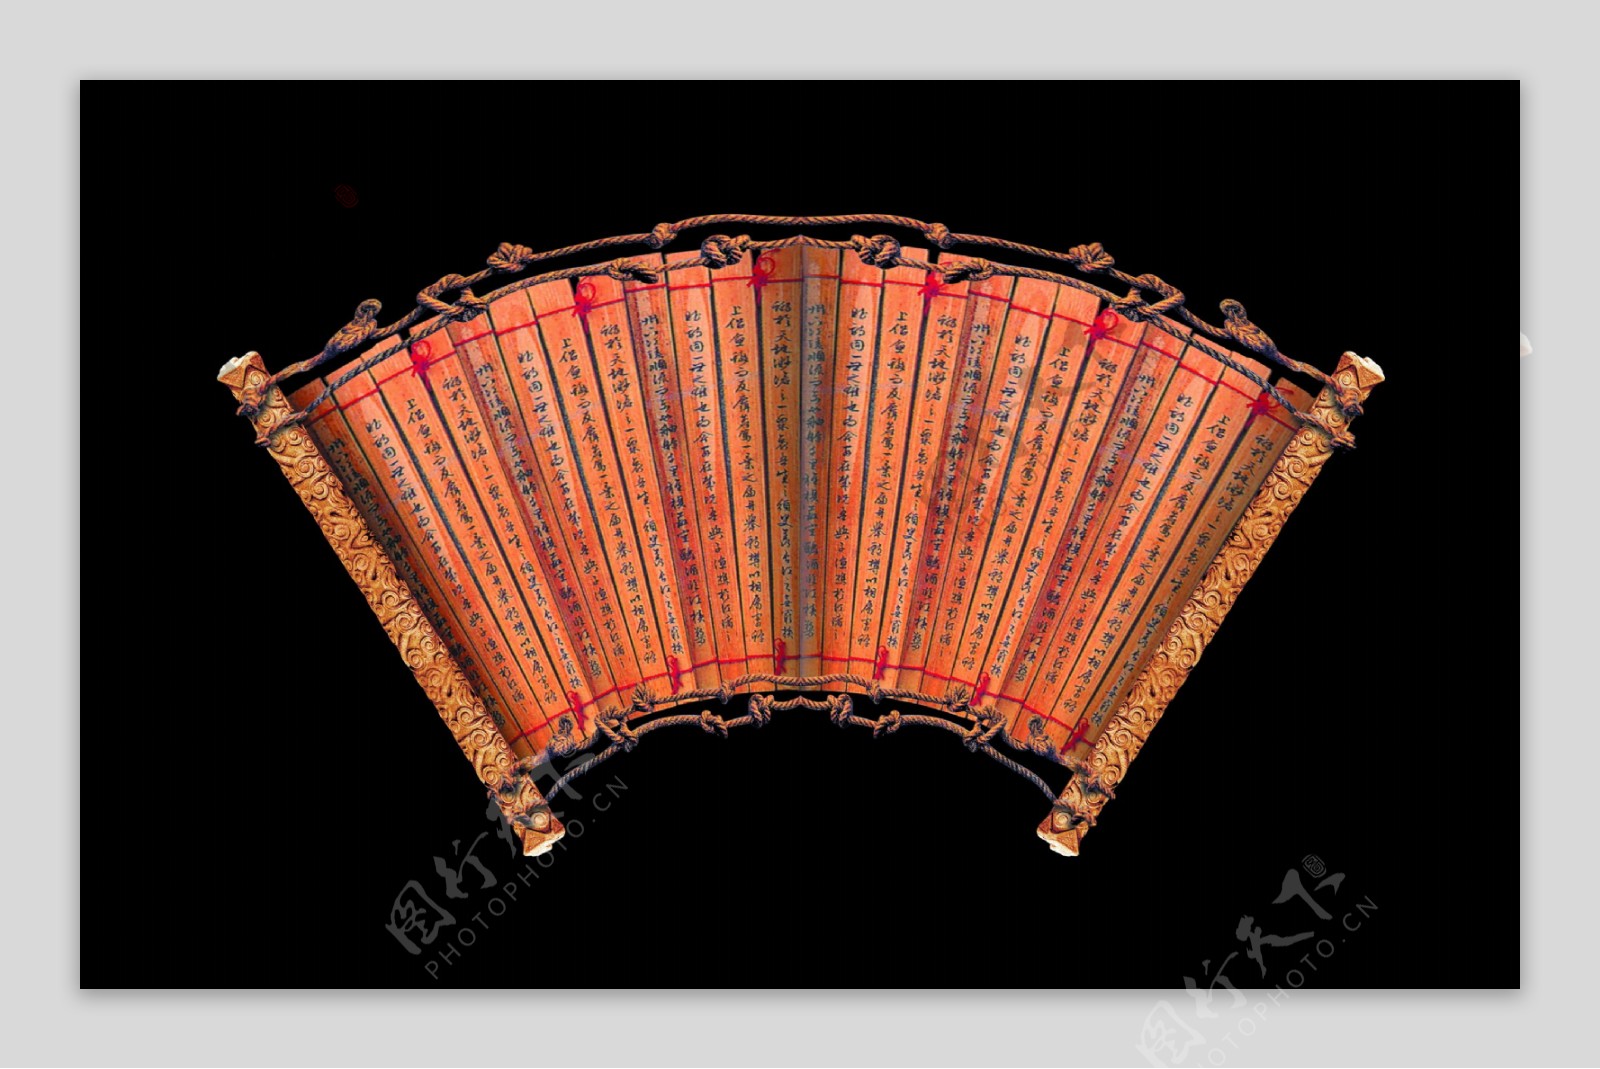 高清晰中国古典书卷幕布图片